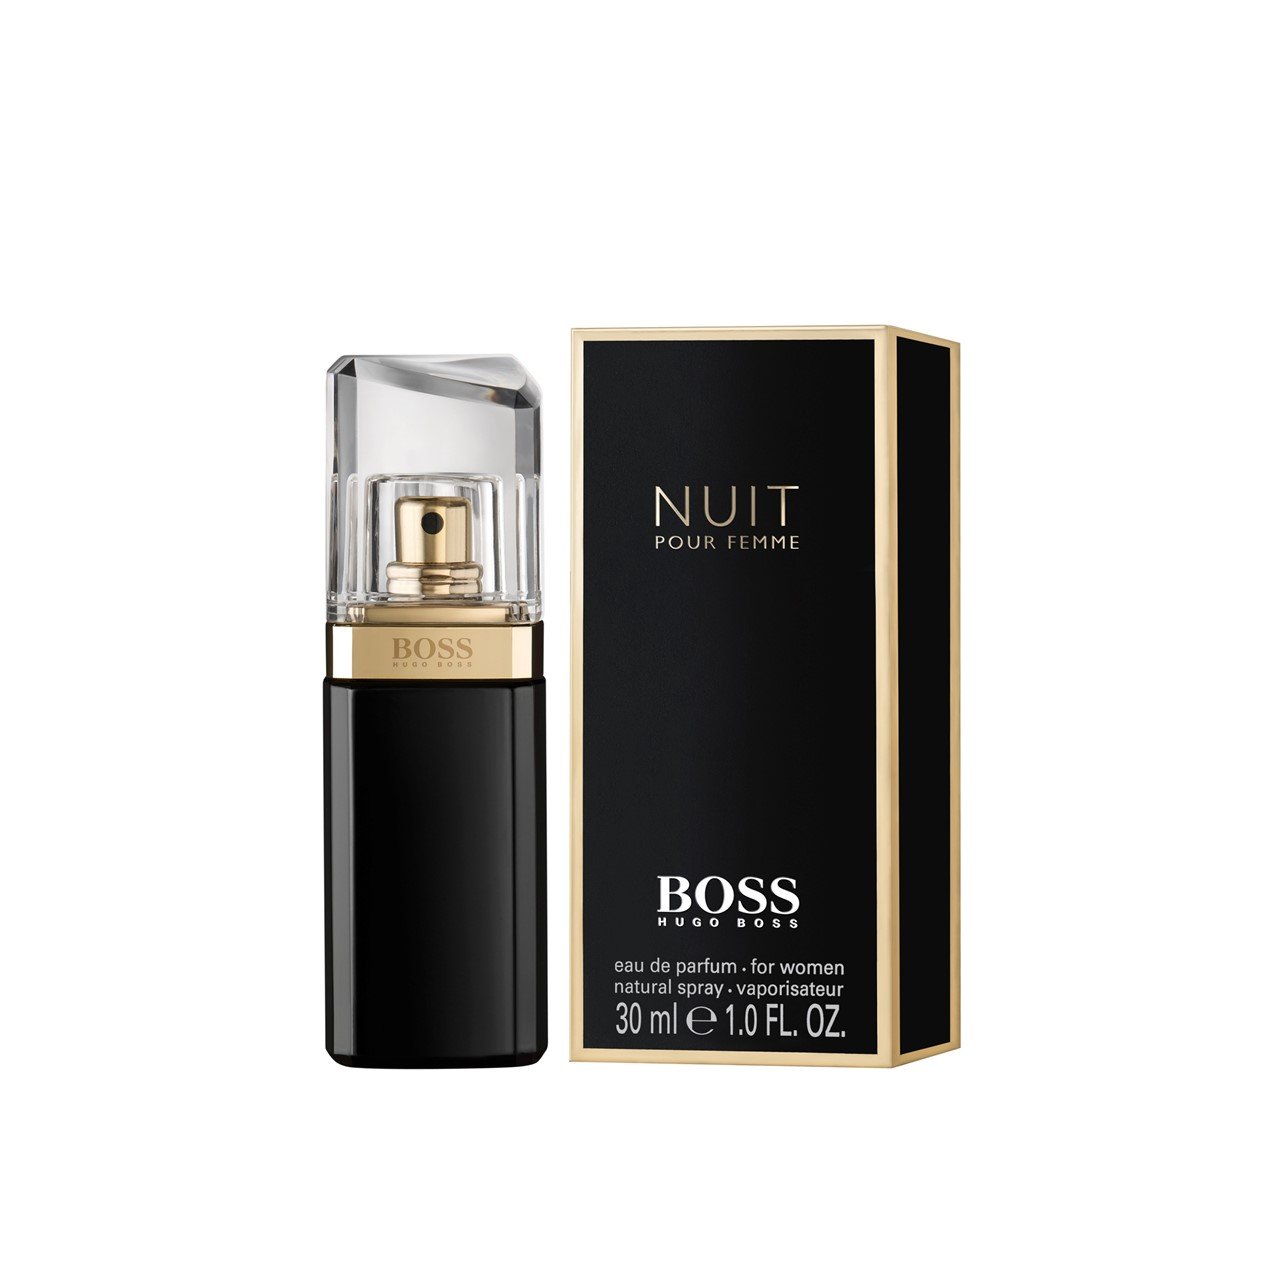 Buy Hugo Boss Nuit Pour Femme Eau de Parfum (1.0fl ·